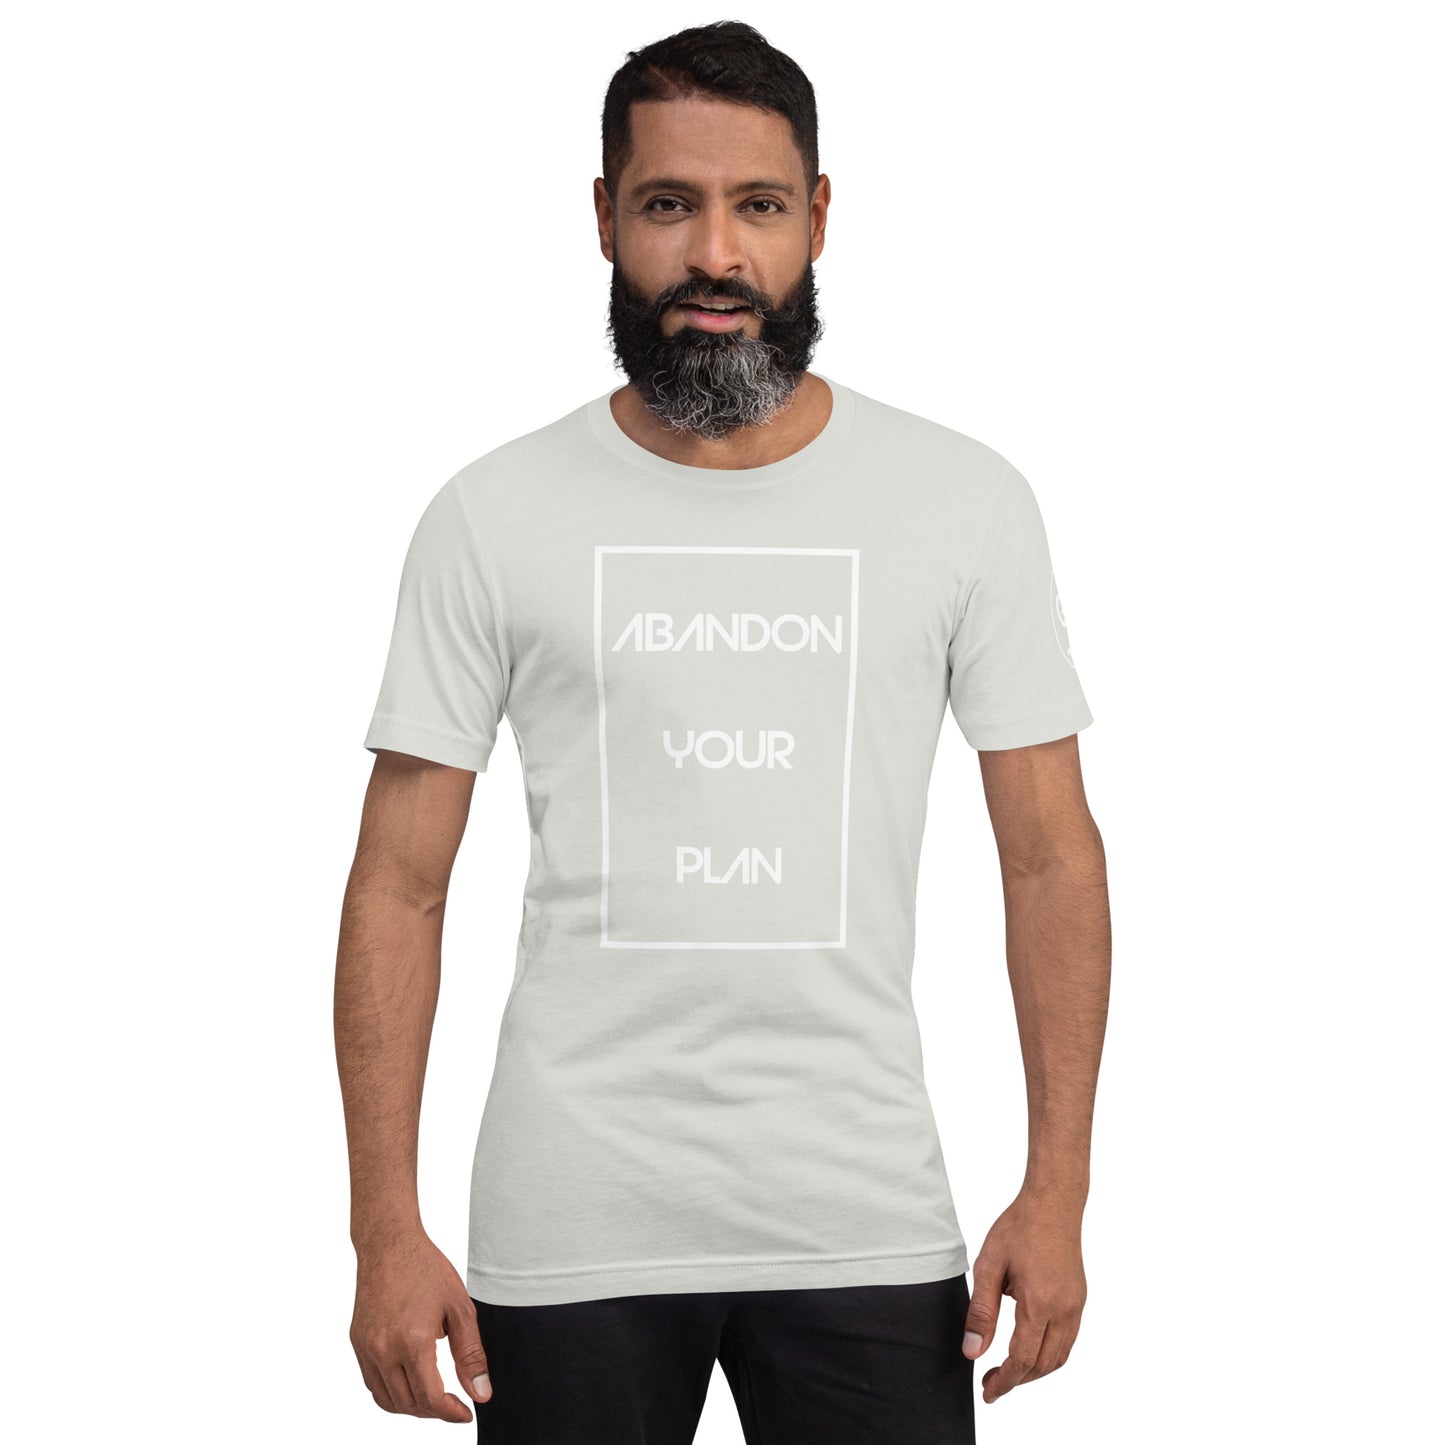 Abandon Your Plan Multi Color (White Font) Unisex t-shirt